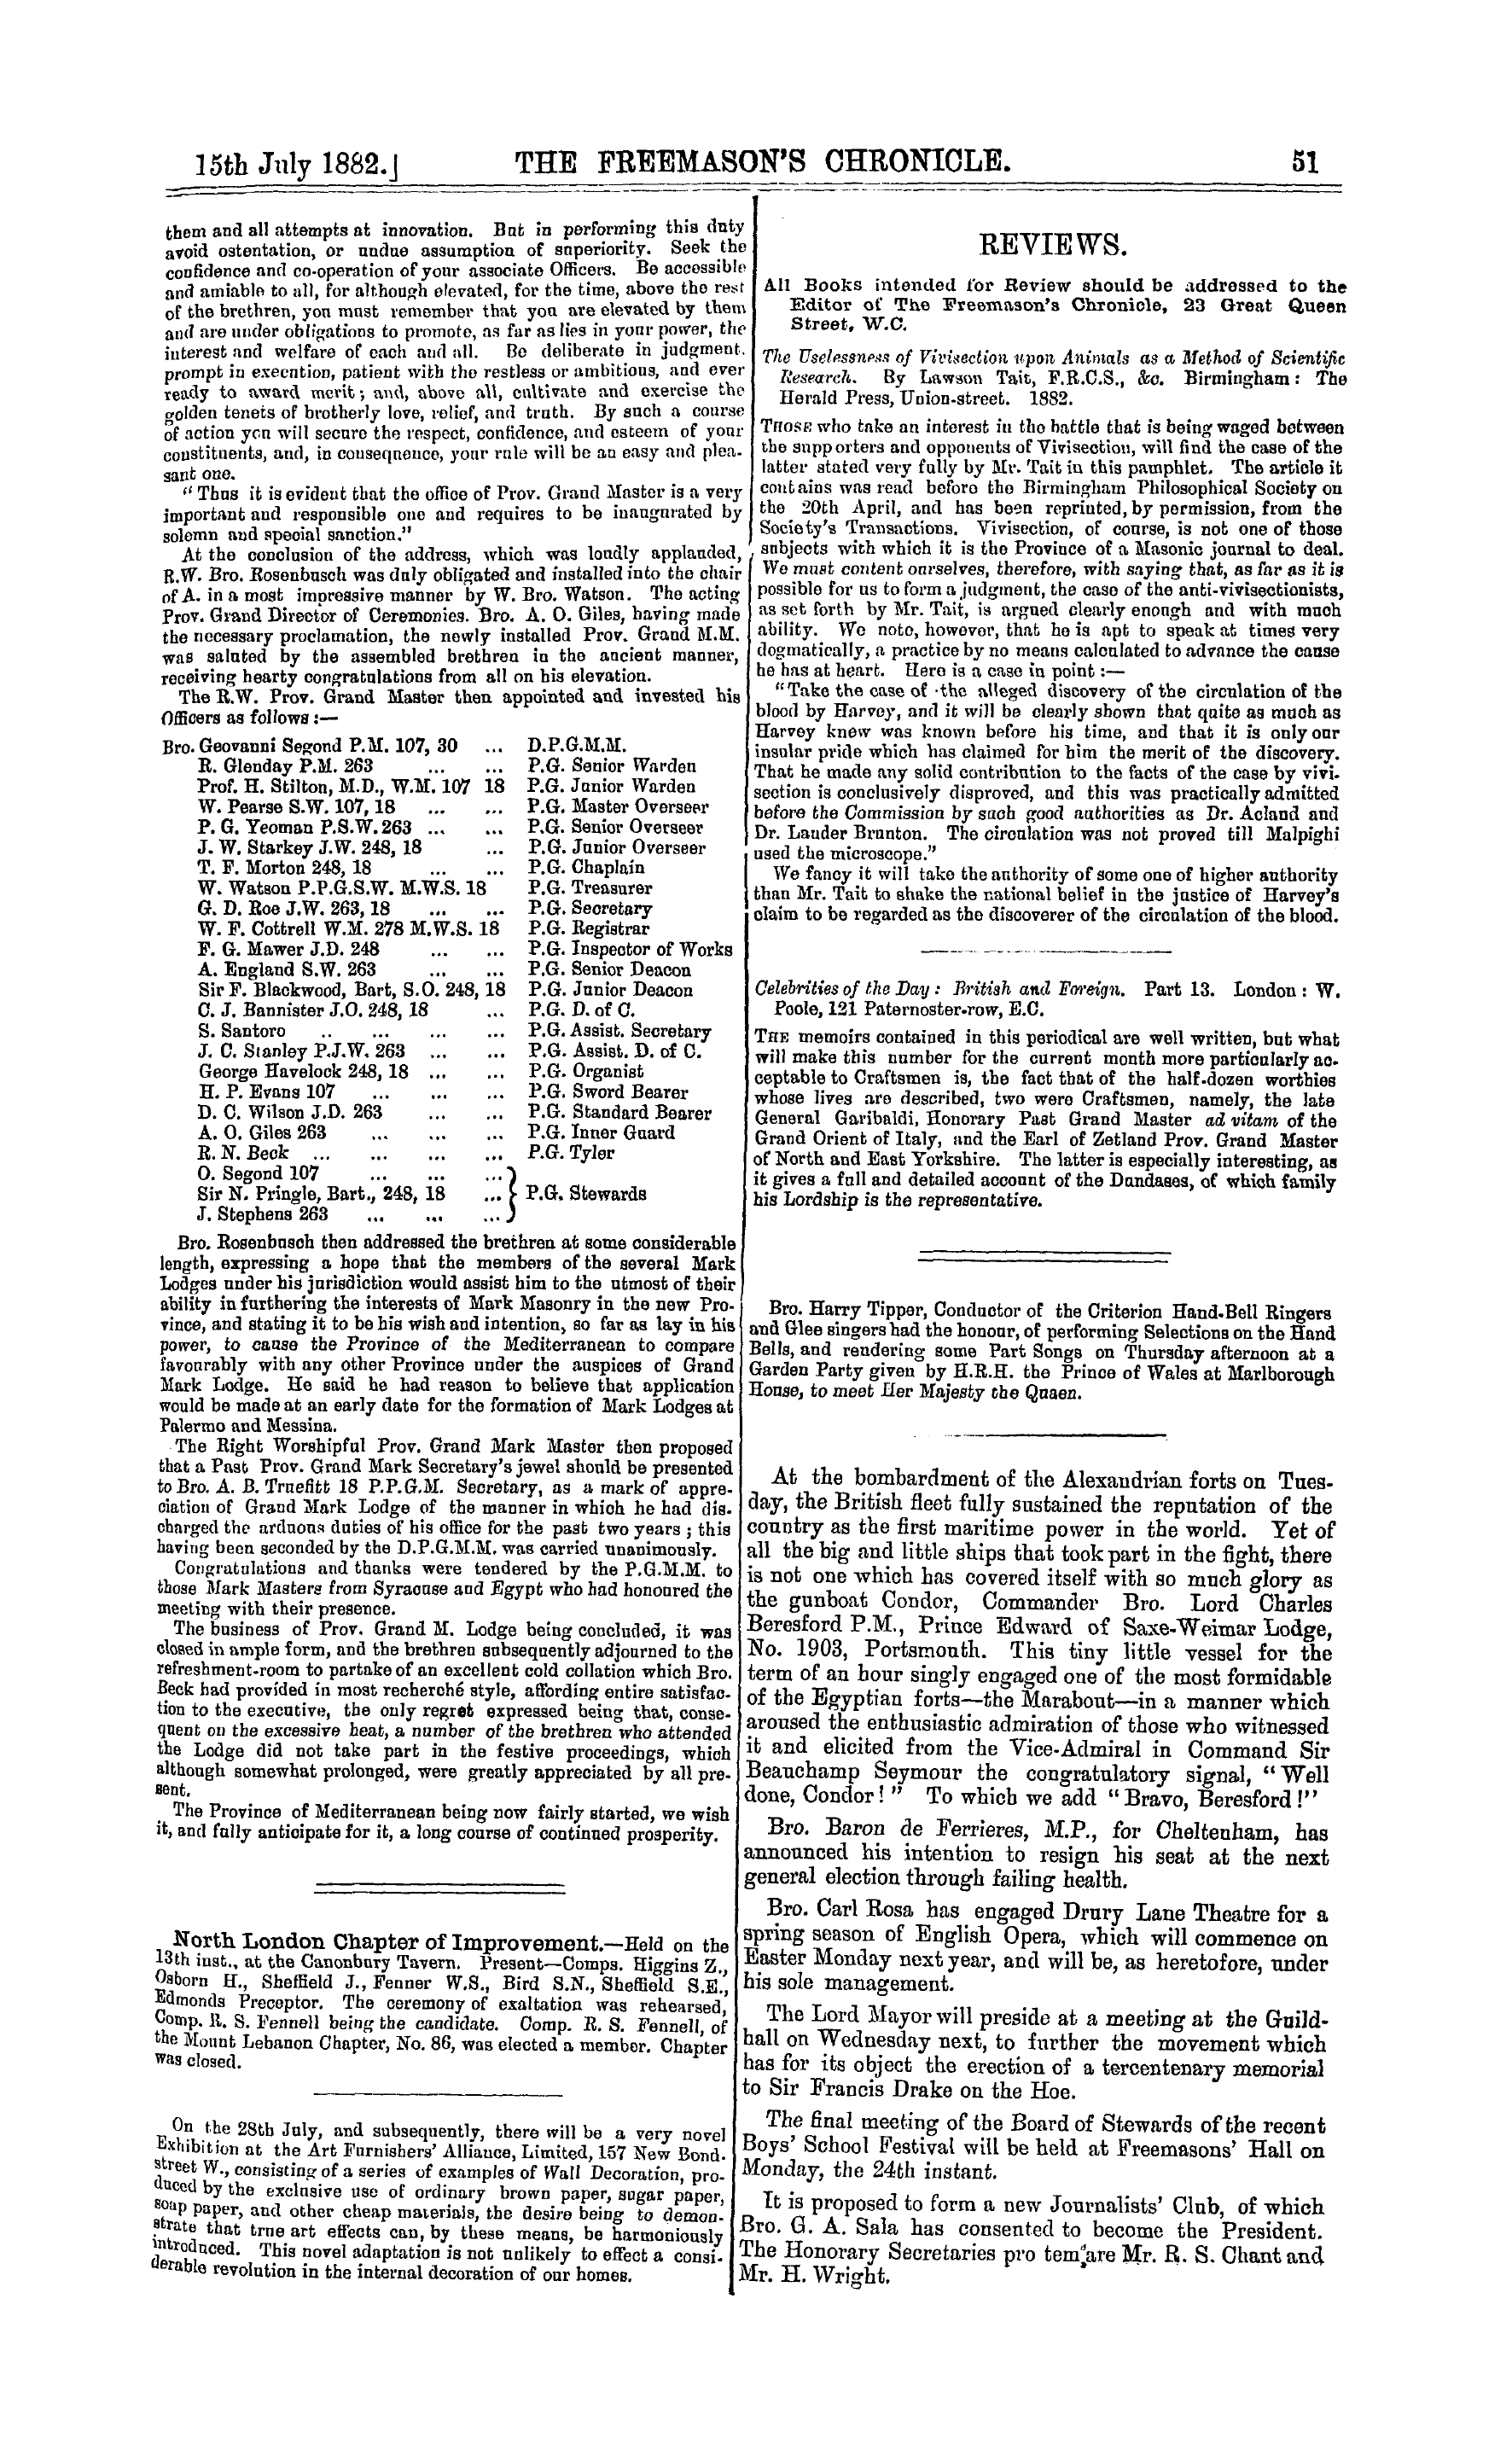 The Freemason's Chronicle: 1882-07-15 - Malta.